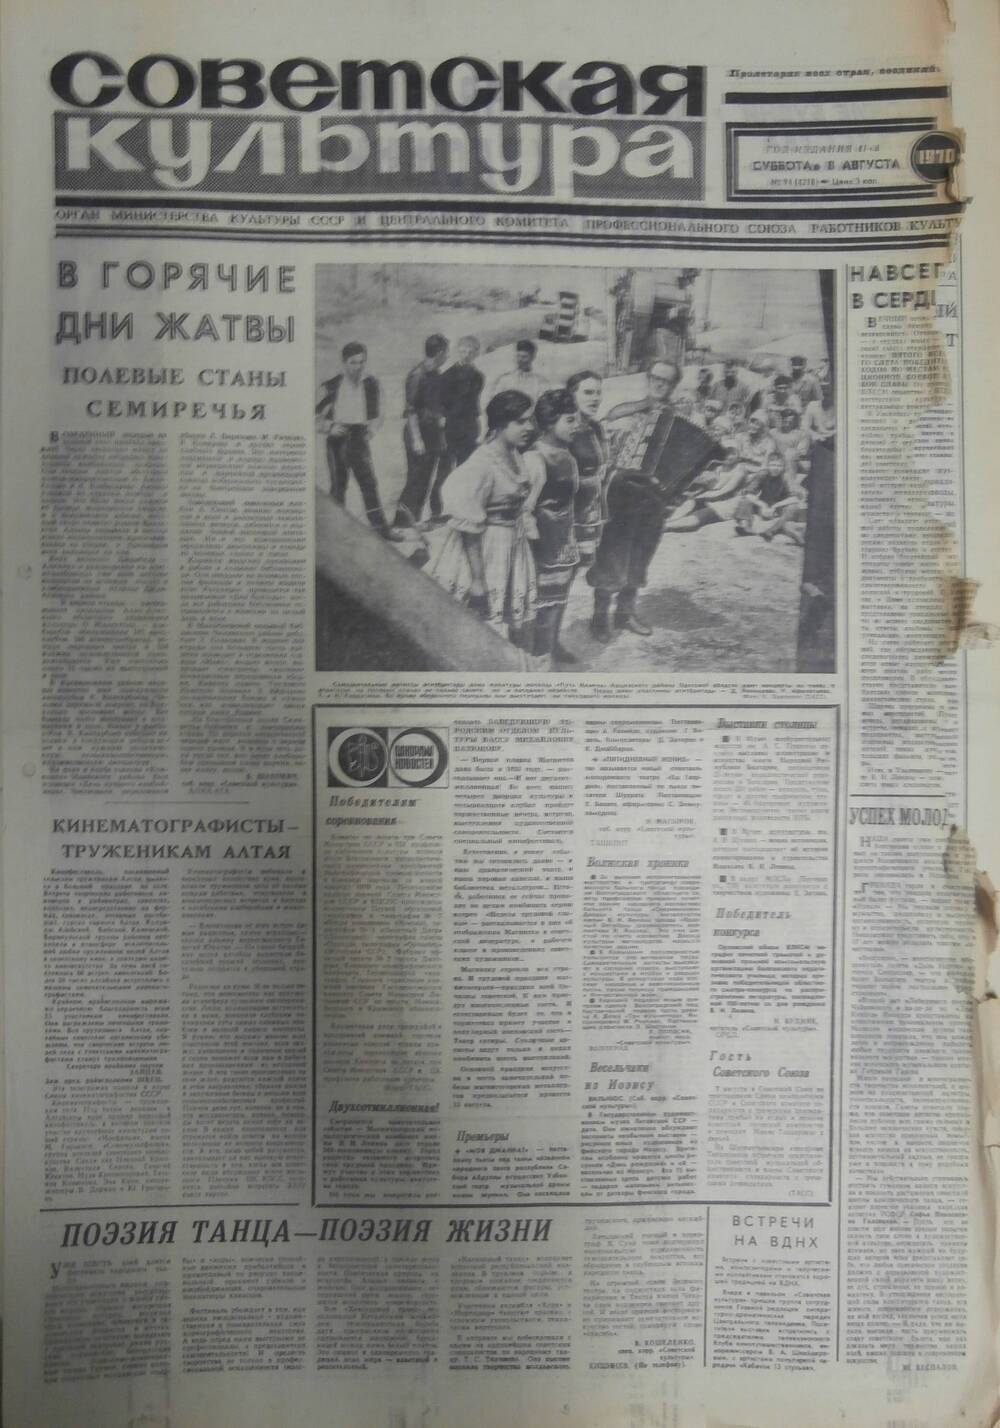 Газета «Советская культура» за 1970 г. Август № 4